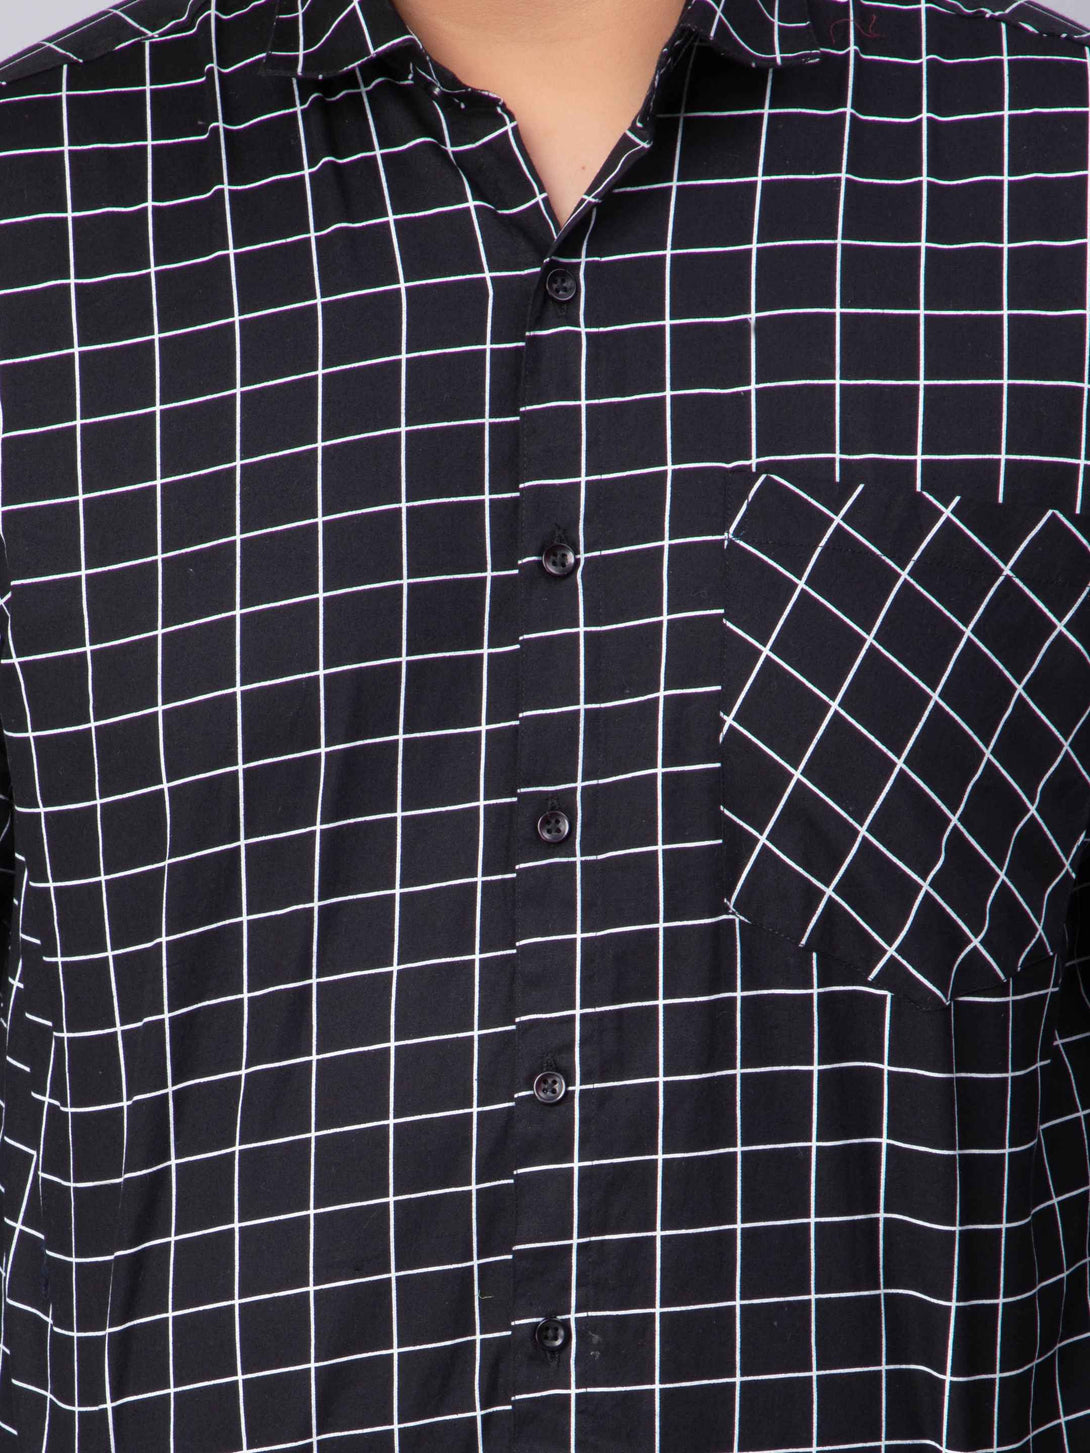 black check plus size shirt